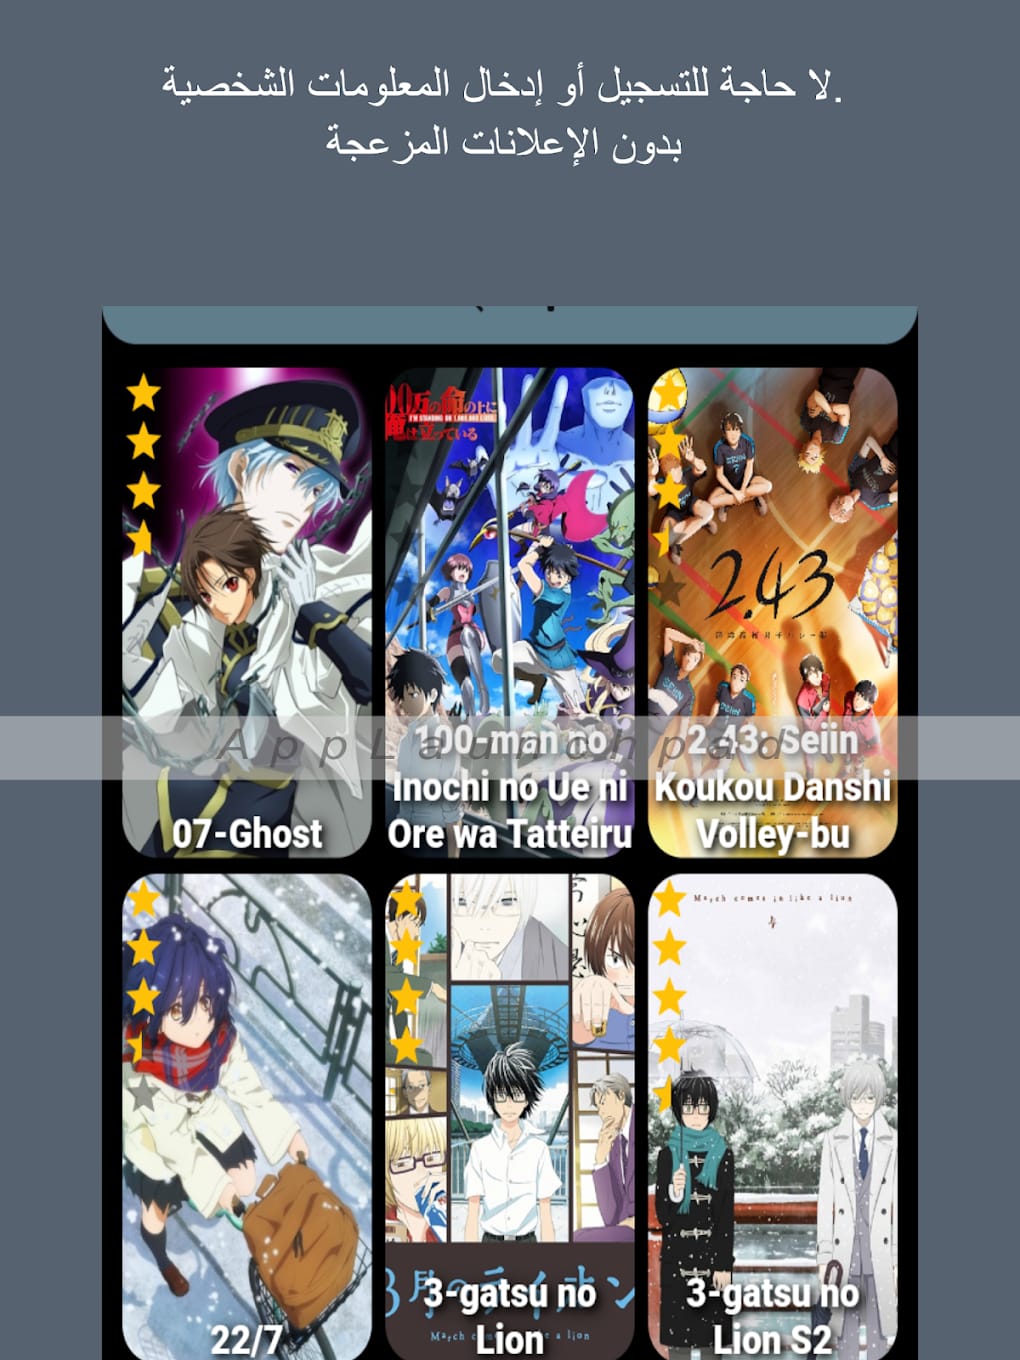 Download do APK de Animefire para Android